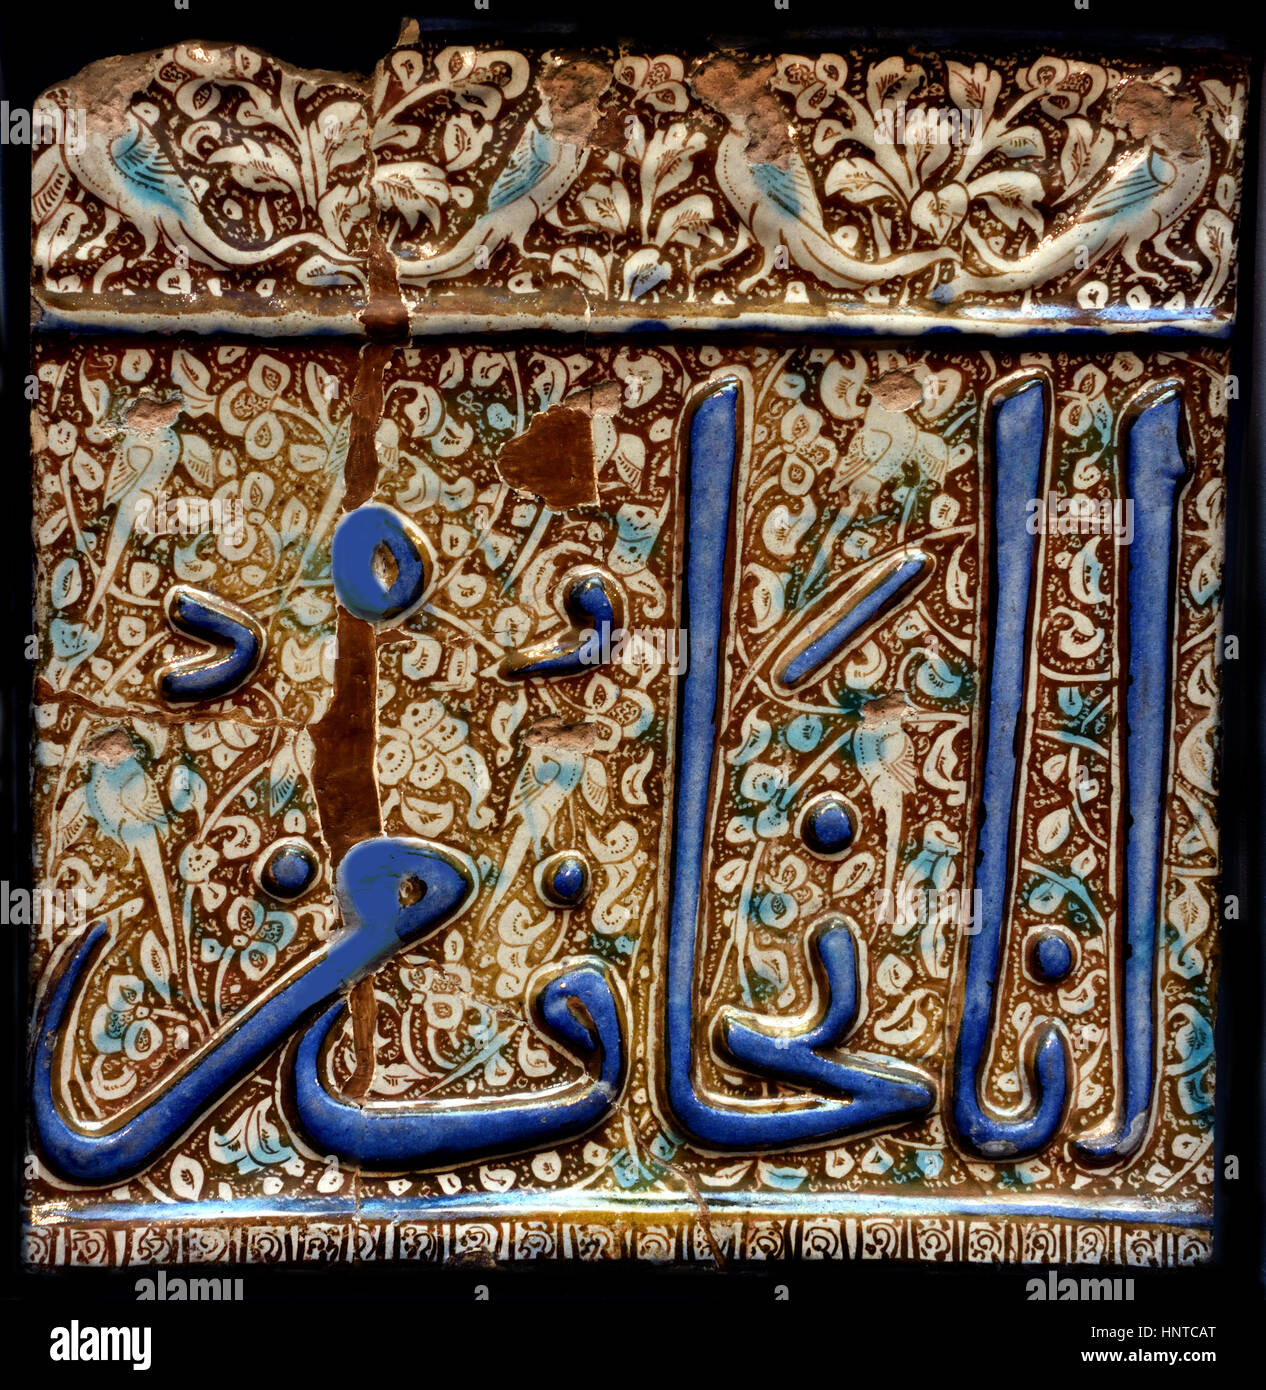 Parte de un gran friso de mosaico con una cita del Corán seguro 76 Irán (Kazan) iraní de 1307 Foto de stock